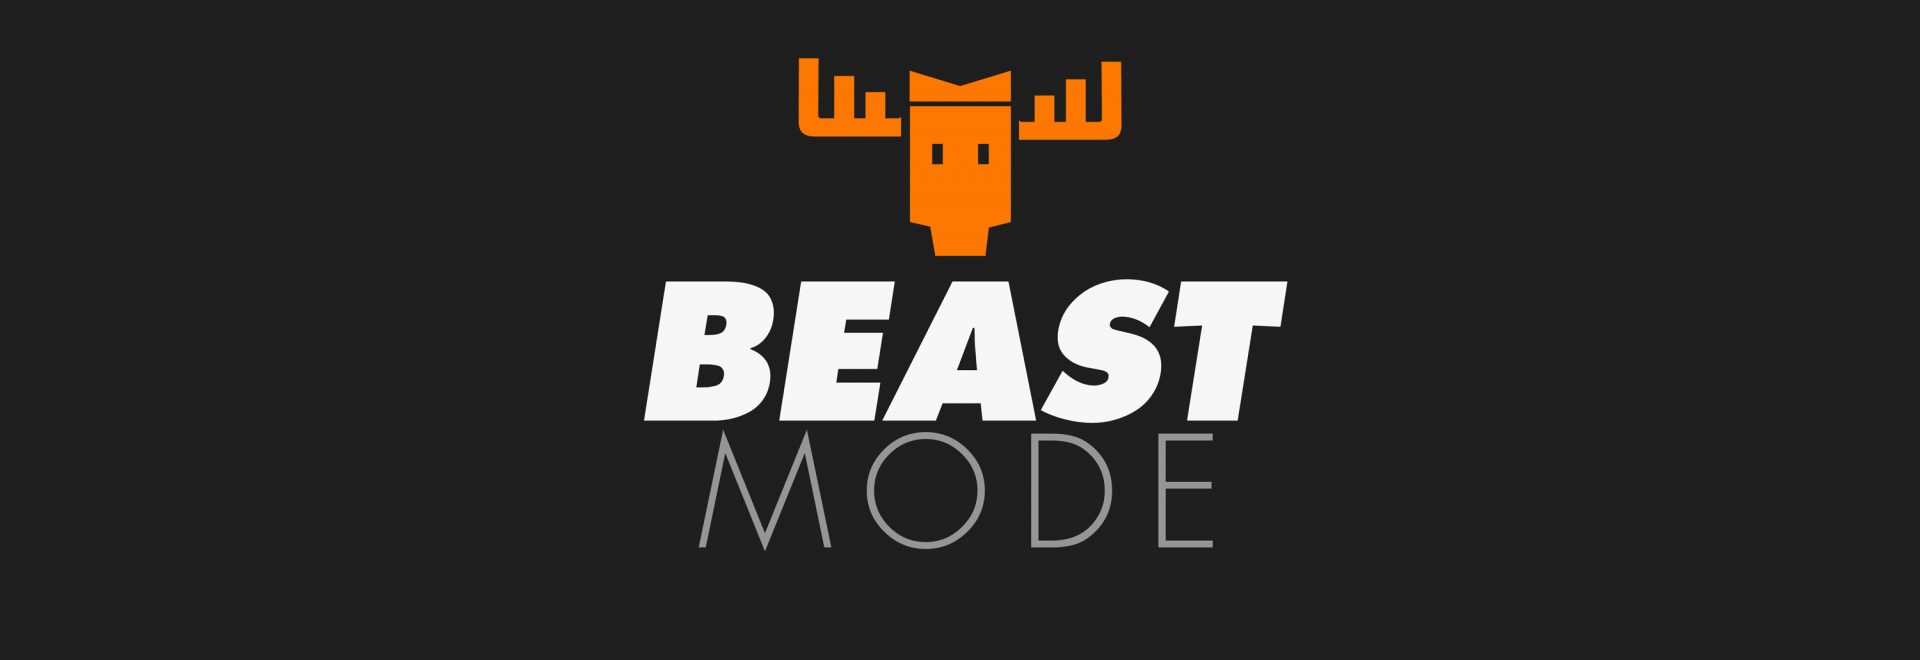 Beast Mode | Biotic Blendz Nutrition Kiosk